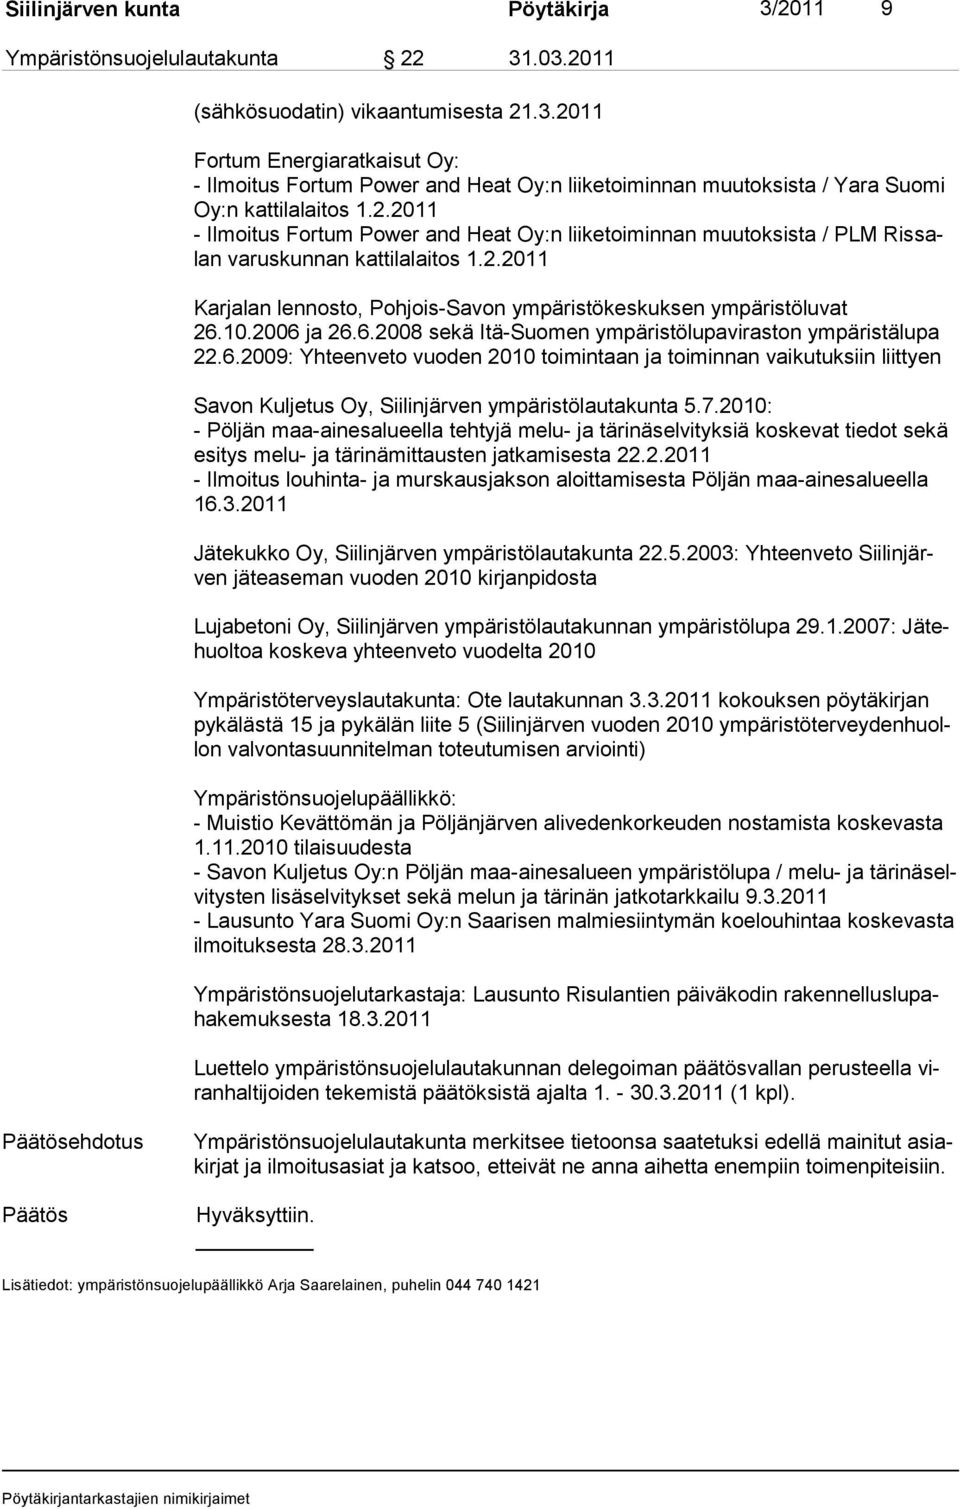 2006 ja 26.6.2008 sekä Itä-Suomen ympäristölupaviraston ympäris tälupa 22.6.2009: Yhteenveto vuo den 2010 toi mintaan ja toiminnan vaiku tuk siin liittyen Savon Kuljetus Oy, Siilinjärven ympäristölautakunta 5.